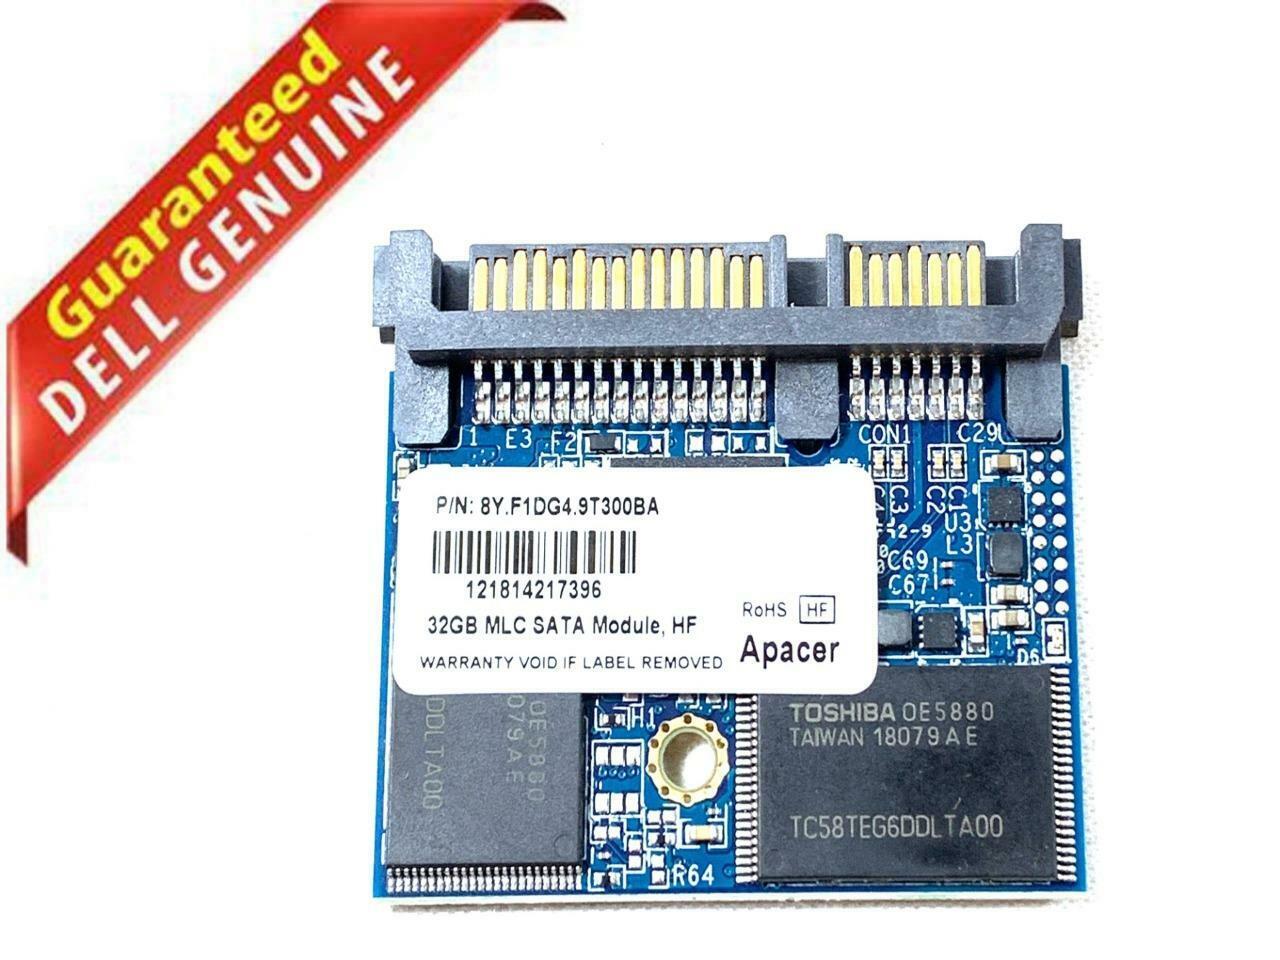 Apacer 32 GB Thin Client MLC SATA Module Card 2.5 in HF 8y.f1dg4.9t300ba Y4VDC